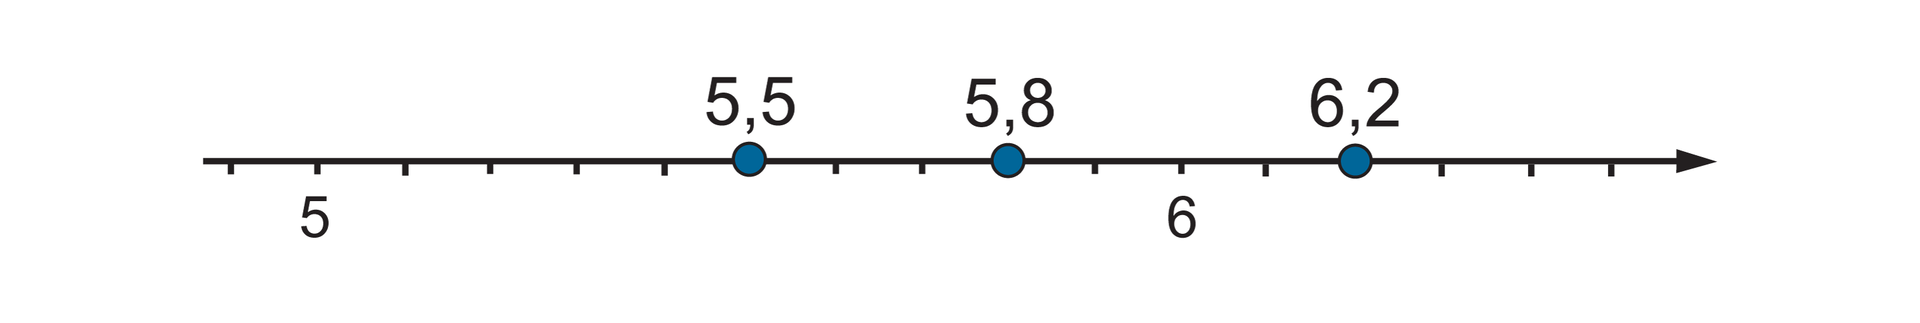 Rysunek osi liczbowej z podziałką co 0,1 z zaznaczonymi punktami: 5,5, który wyznacza pięć części za punktem 5, 5,8, który wyznacza osiem części za punktem 5 i 6,2, który wyznacza dwie części za punktem sześć.